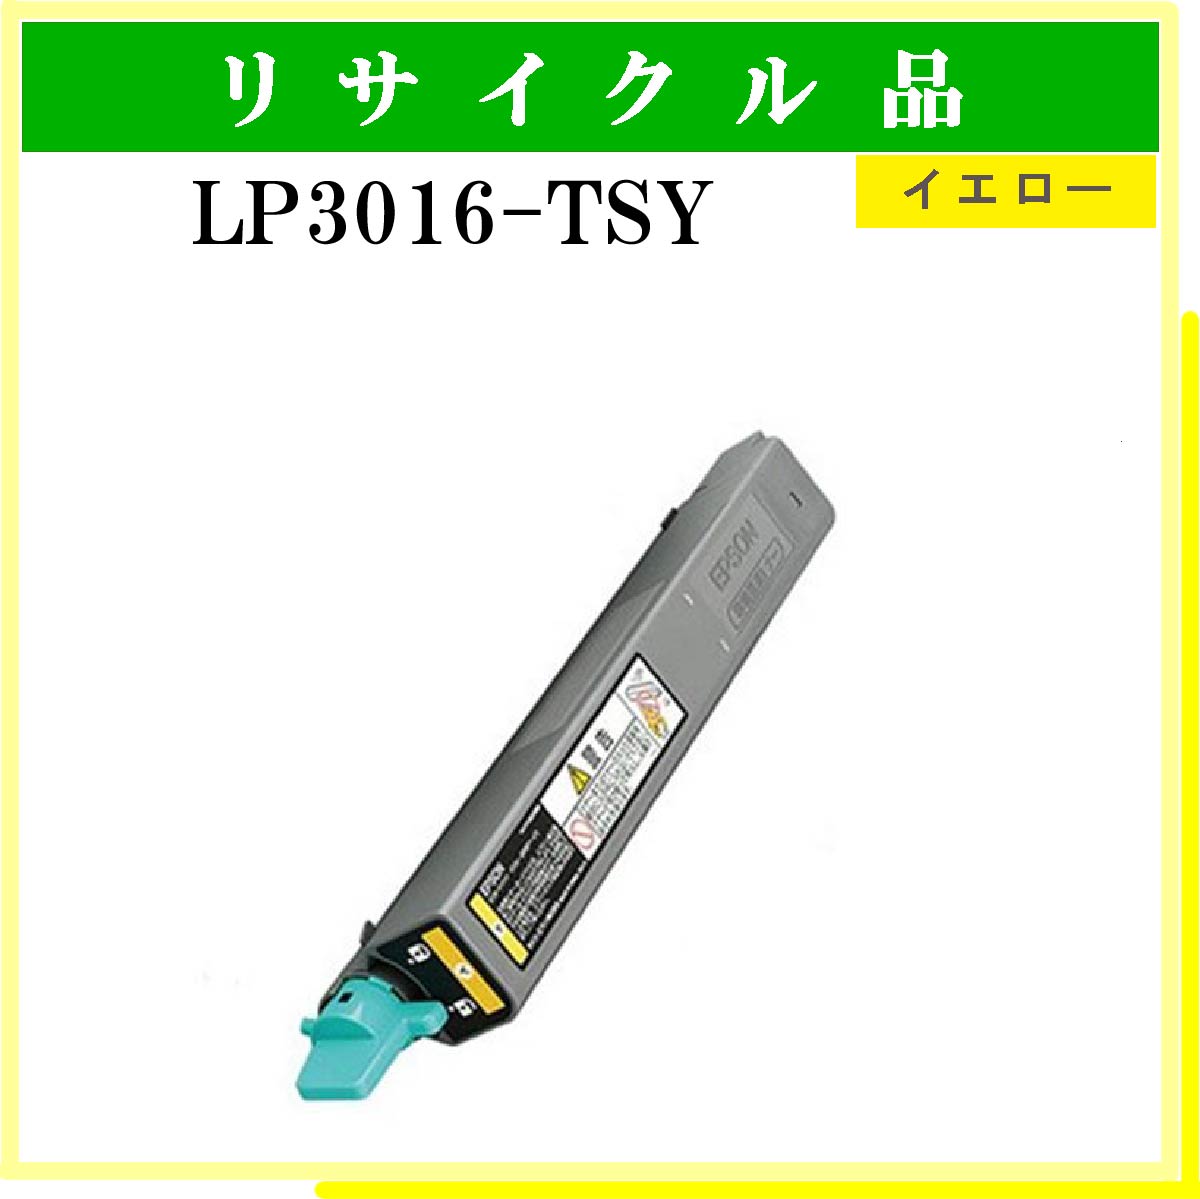 LP3016-TSY